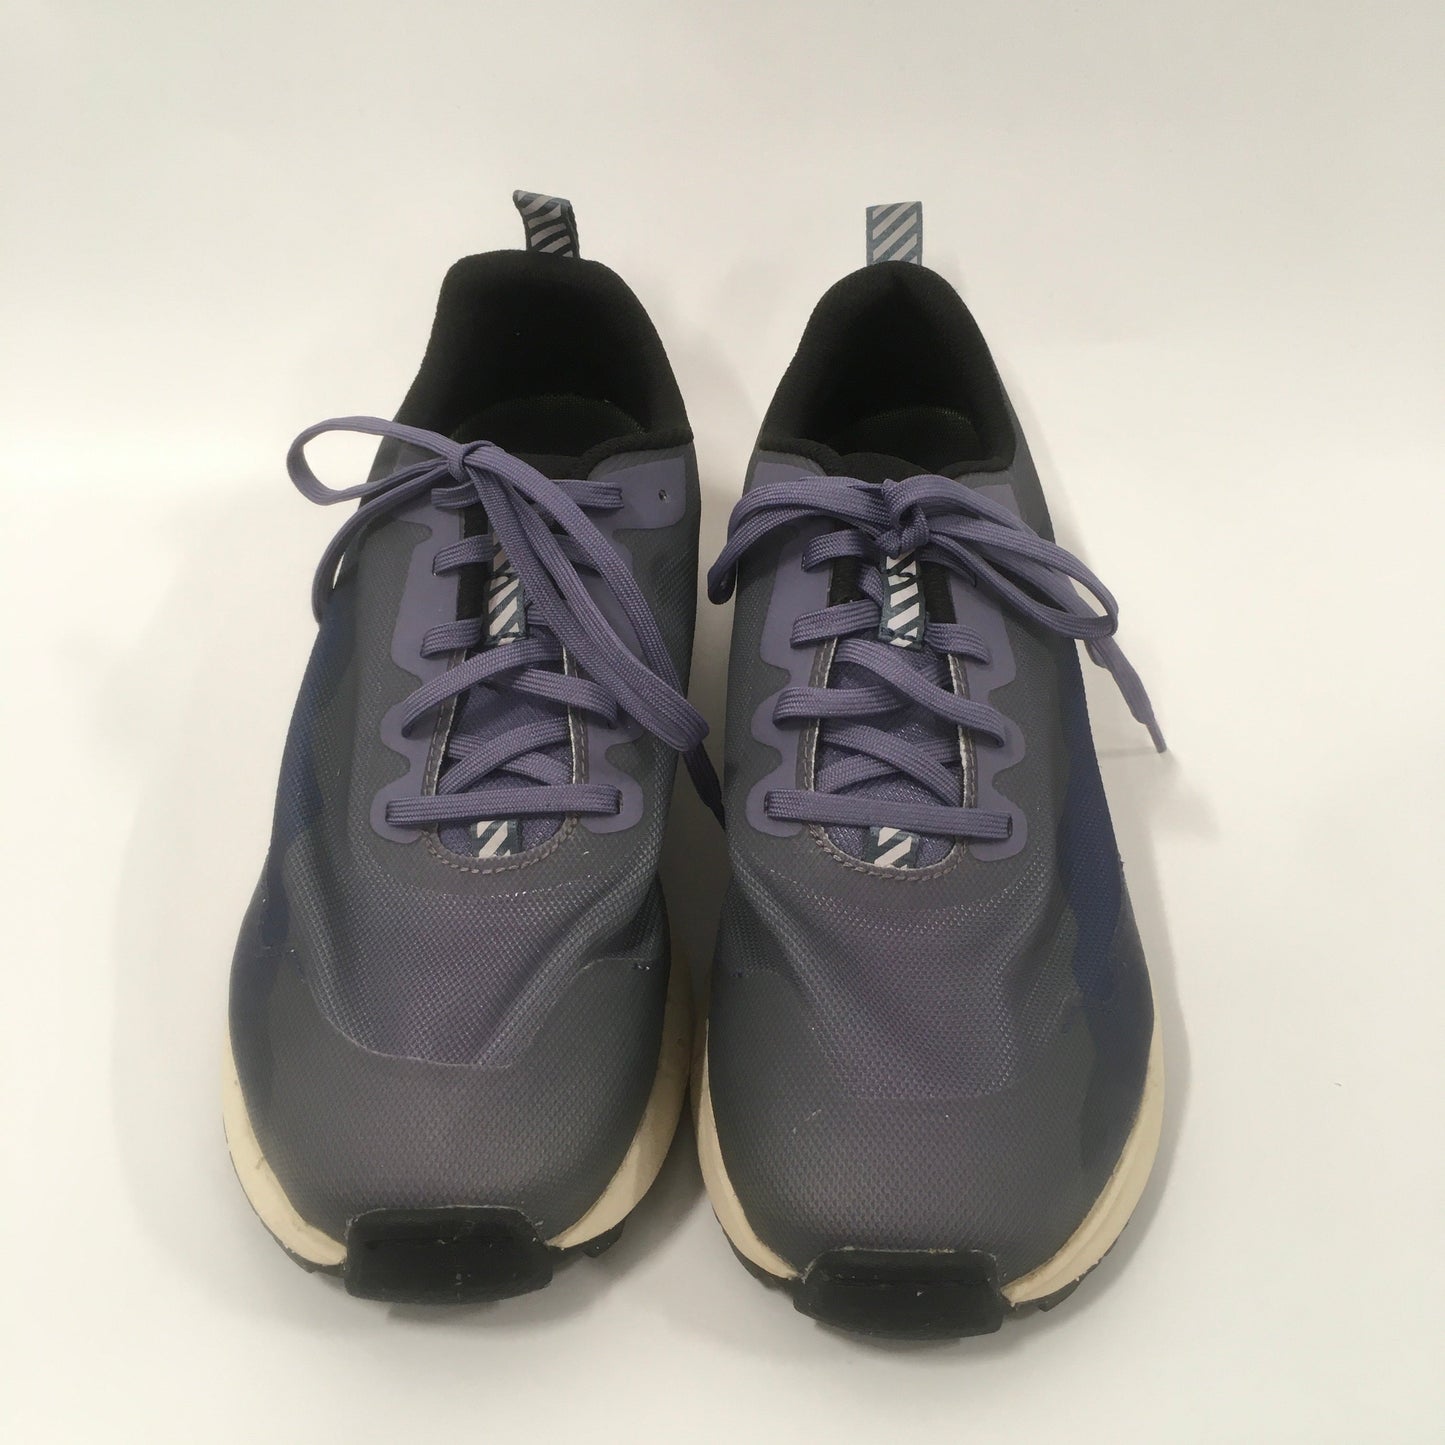 Blue & Purple Shoes Athletic Icebug Capra, Size 9.5